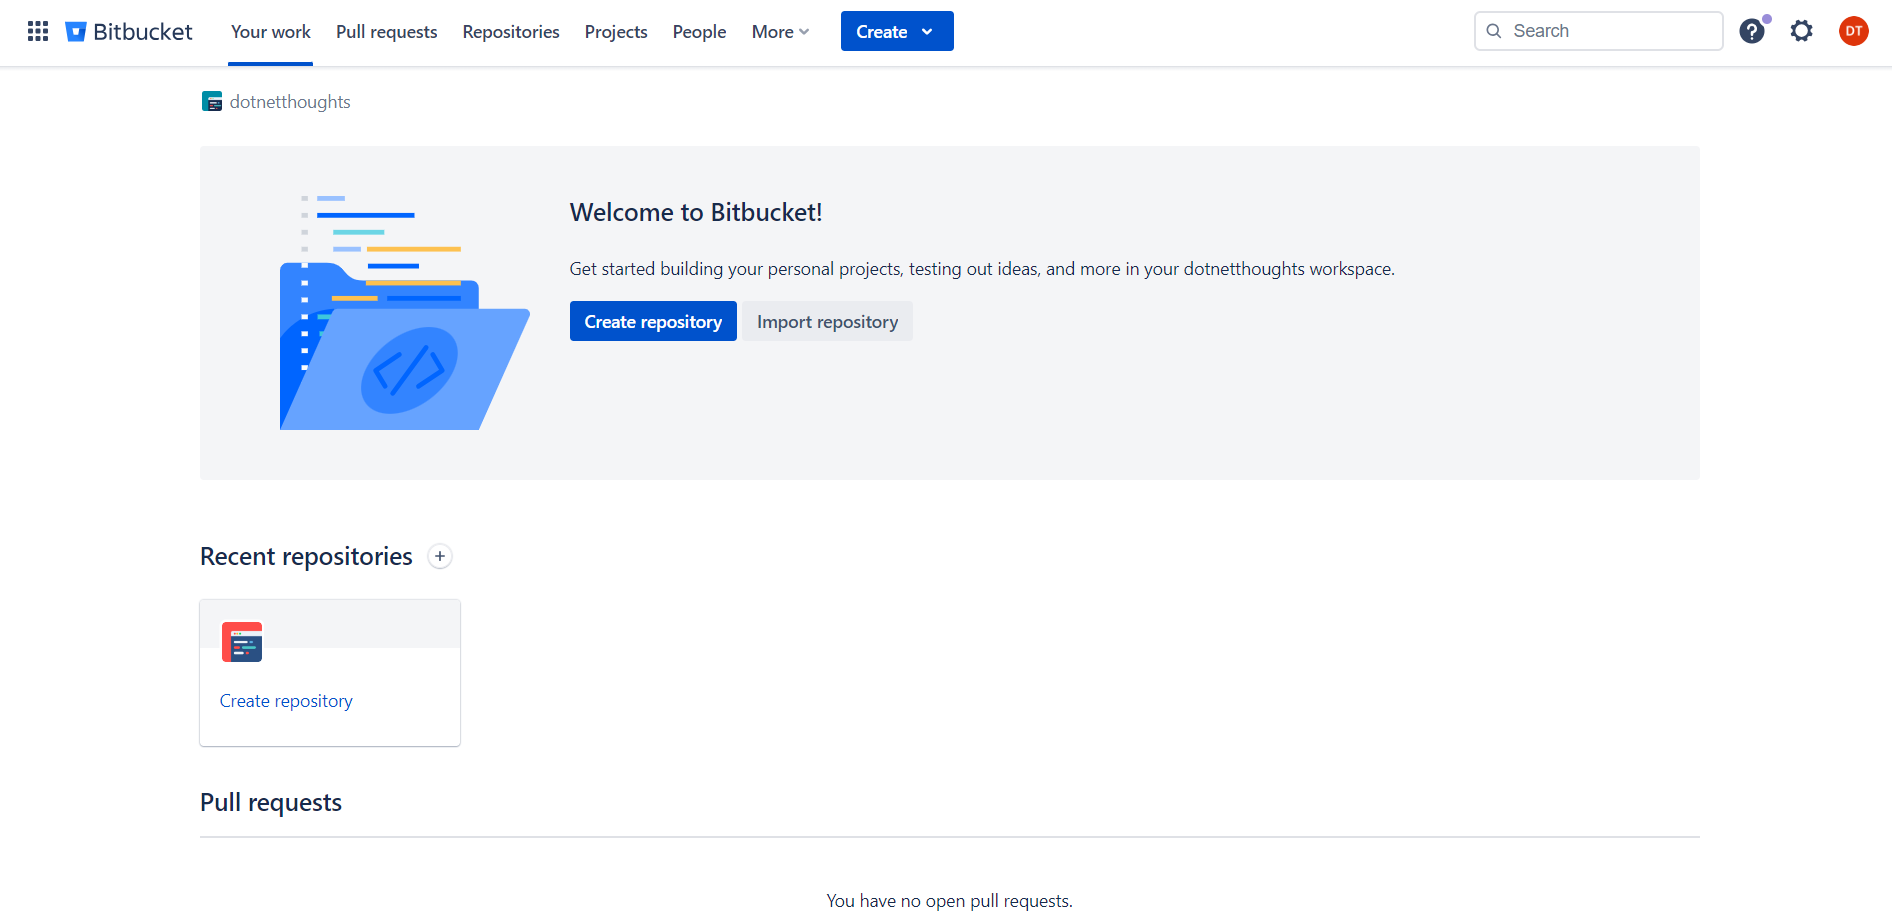 Welcome to Bitbucket